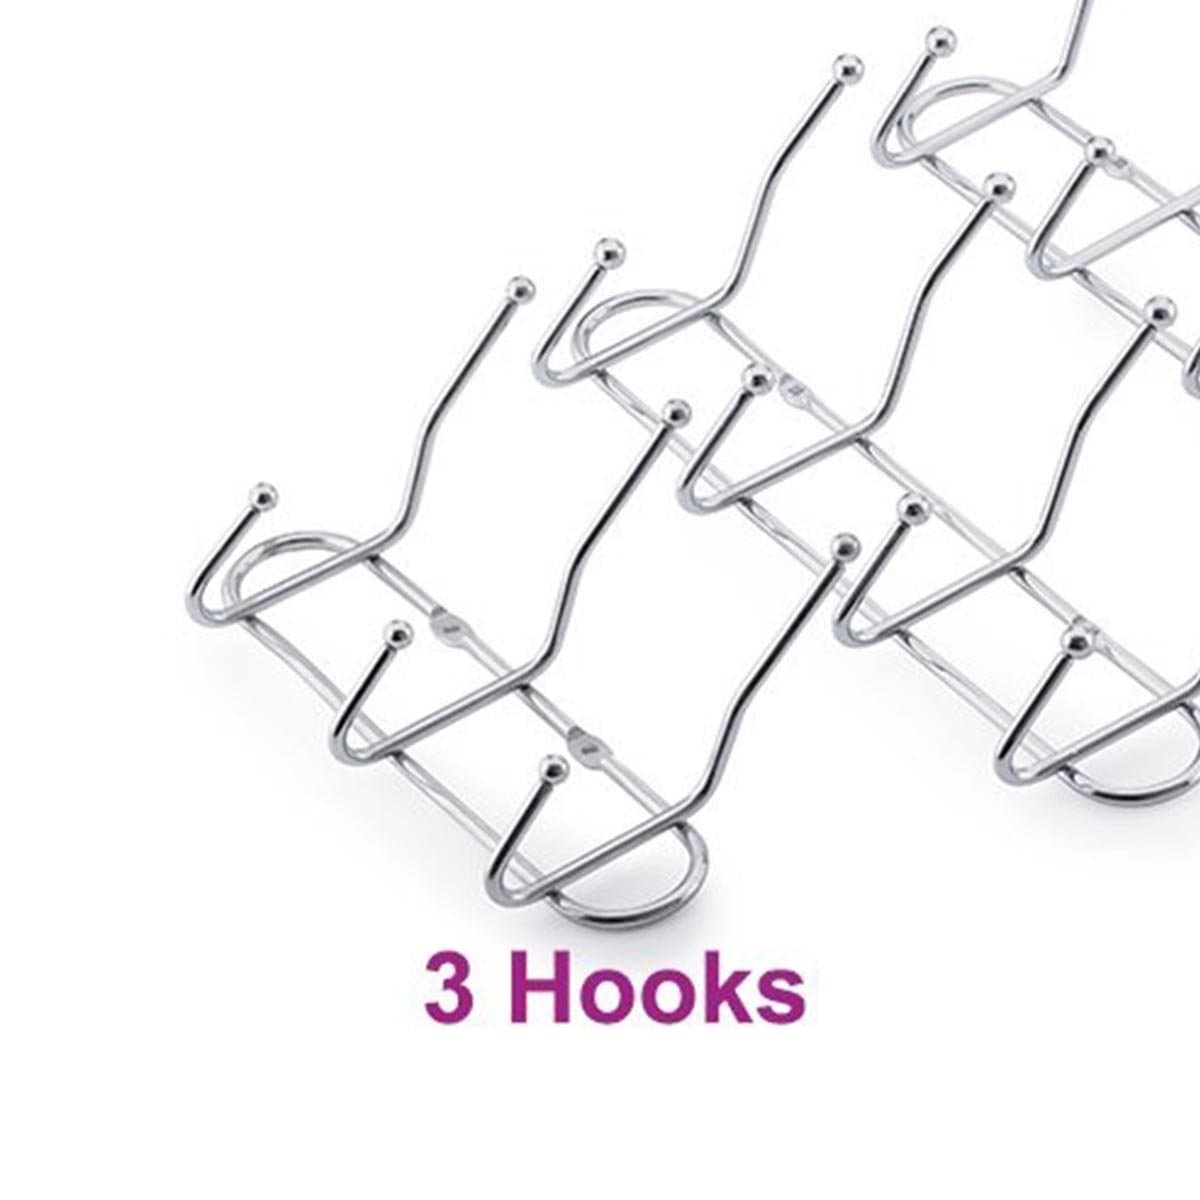 NB650 3 Hooks S/S Line Hook